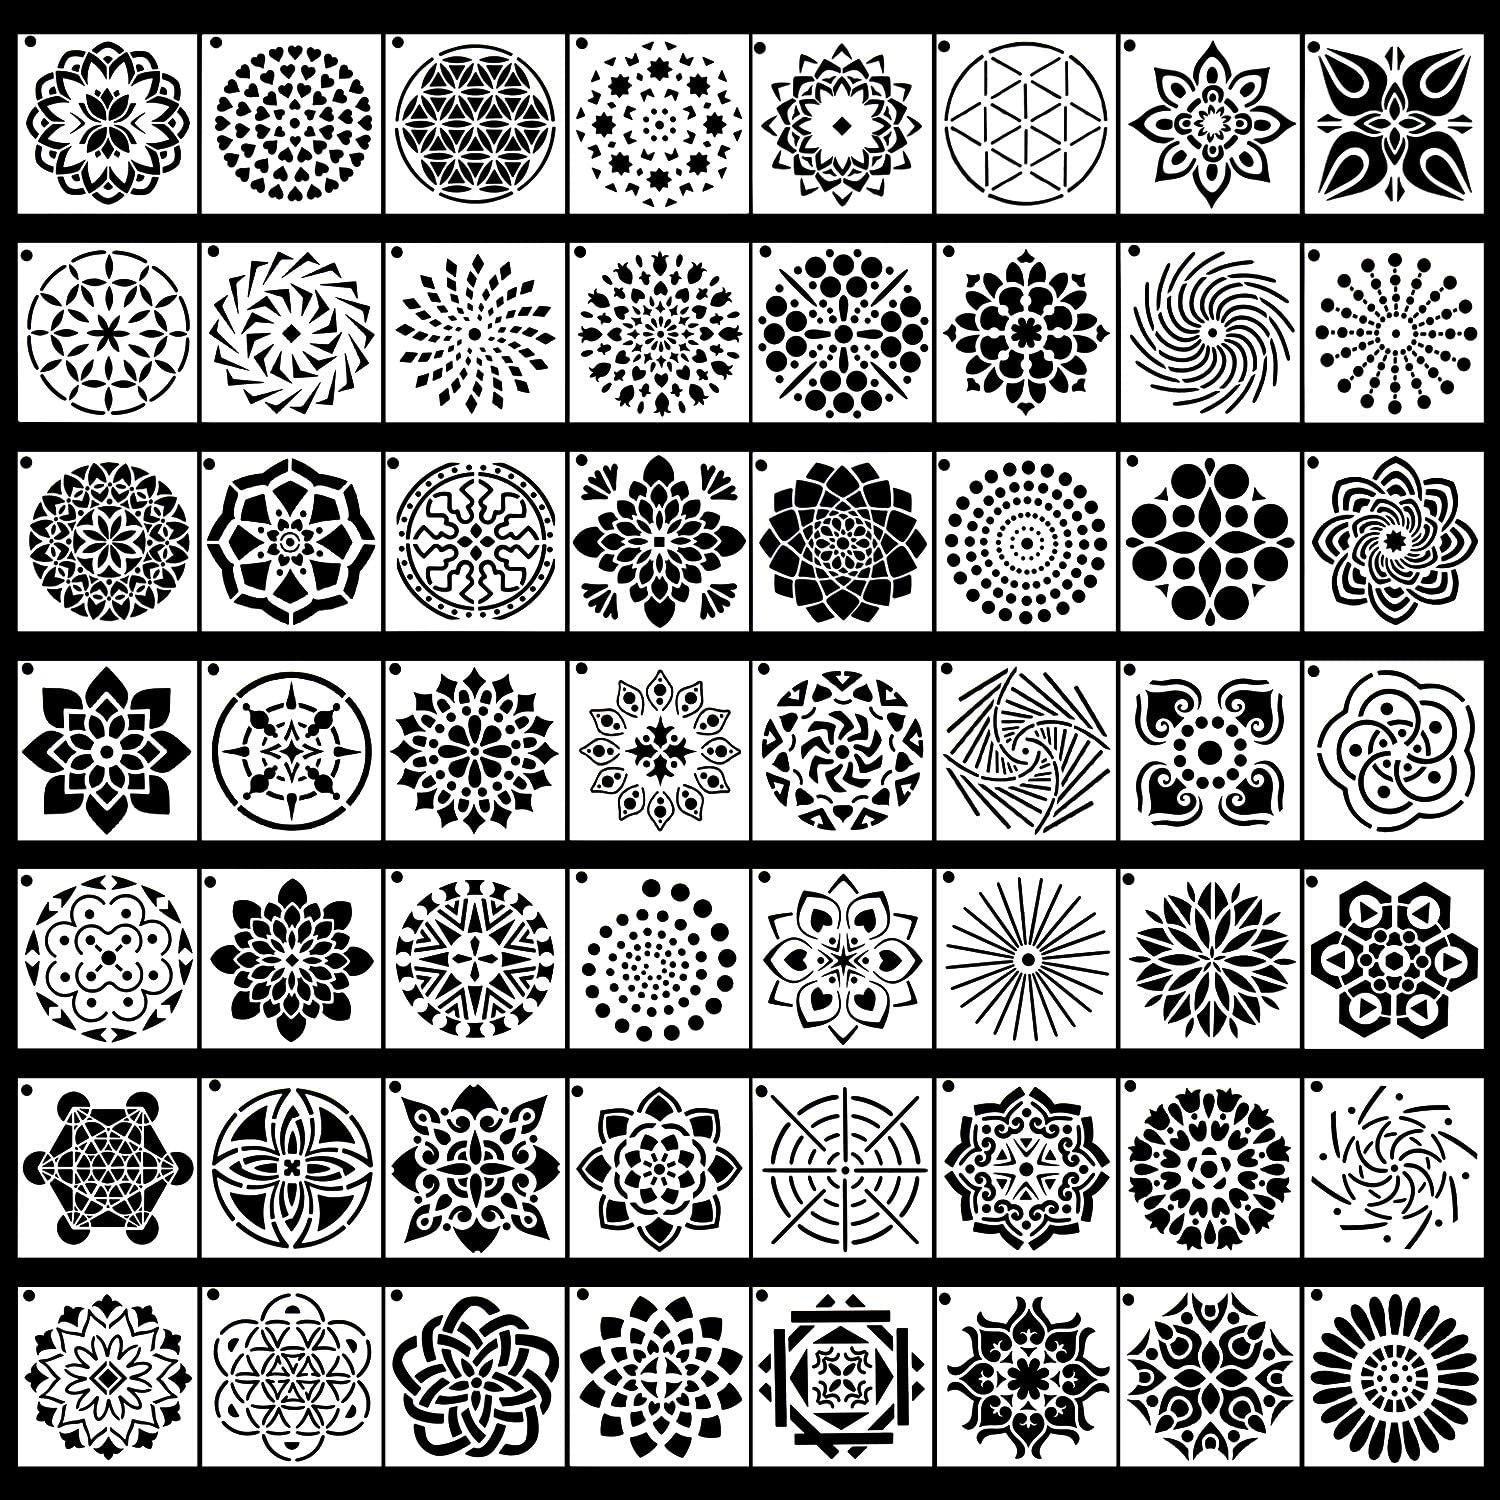 Augshy 3.6 x 3.6-Inch Mandala Stencils & Templates, 56-Piece